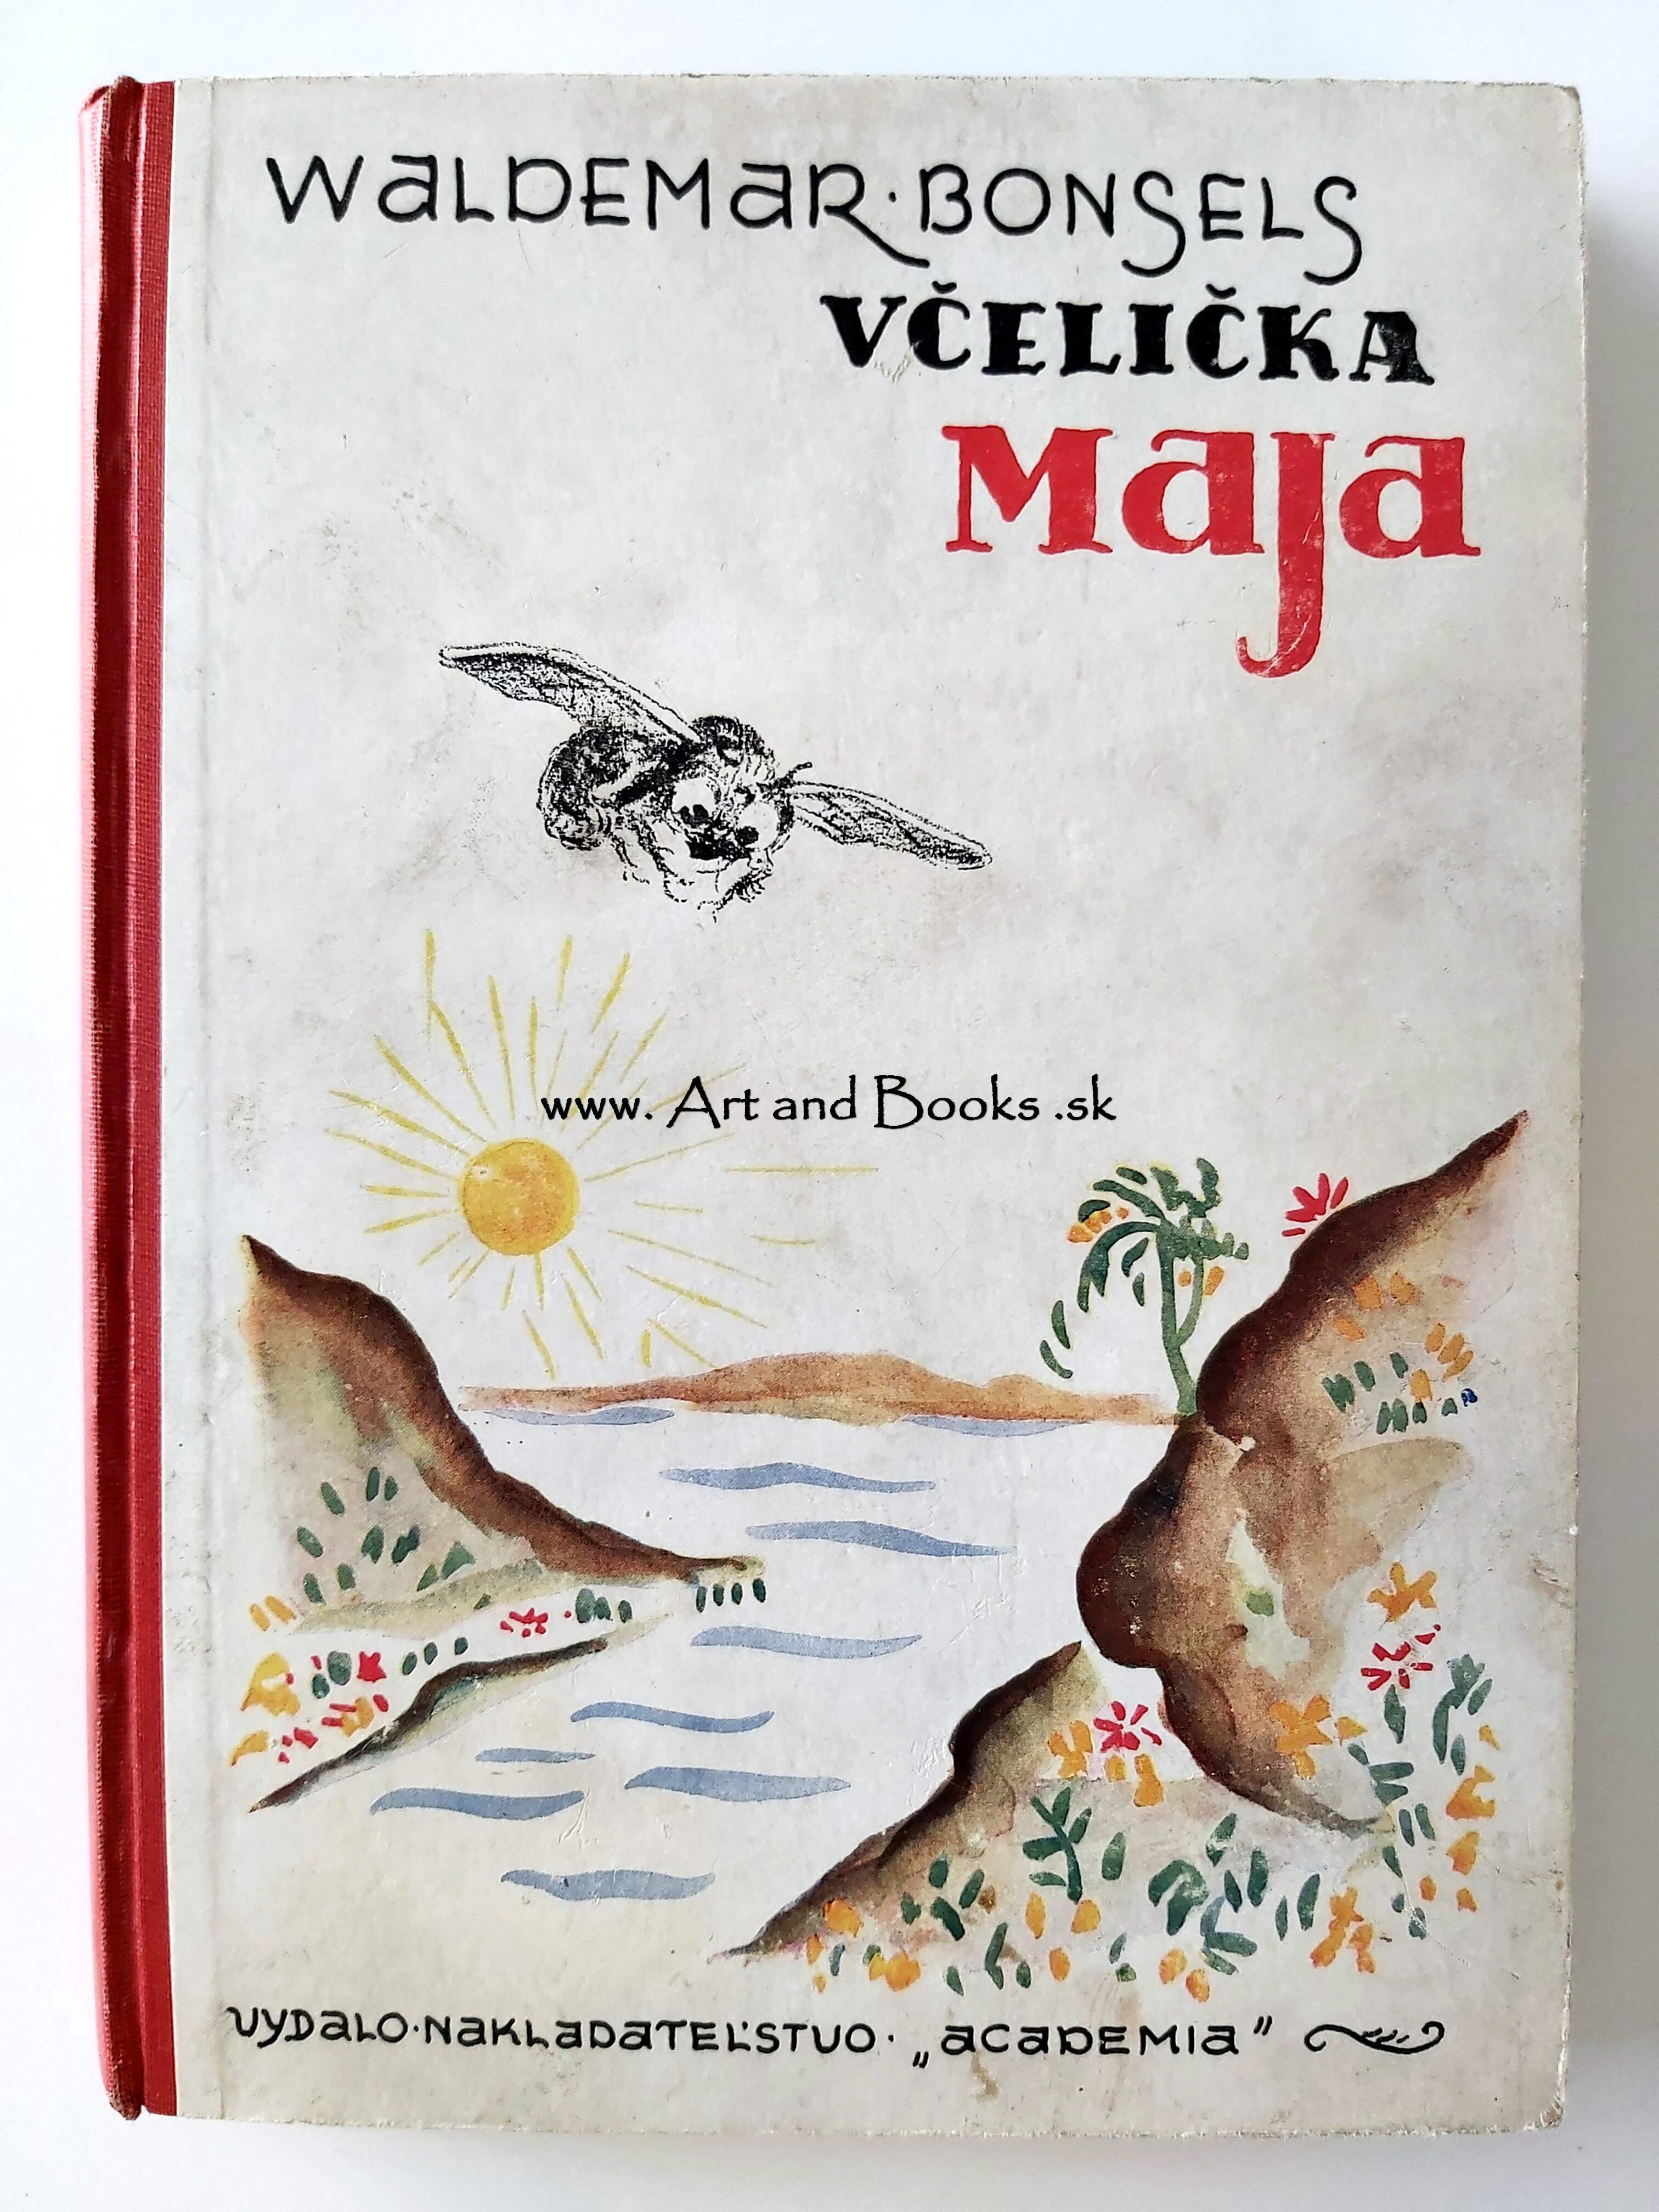 Waldemar Bonsels - Včelička Maja a jej dobrodružstvá (1940/41) (sold/predané) ● 151003